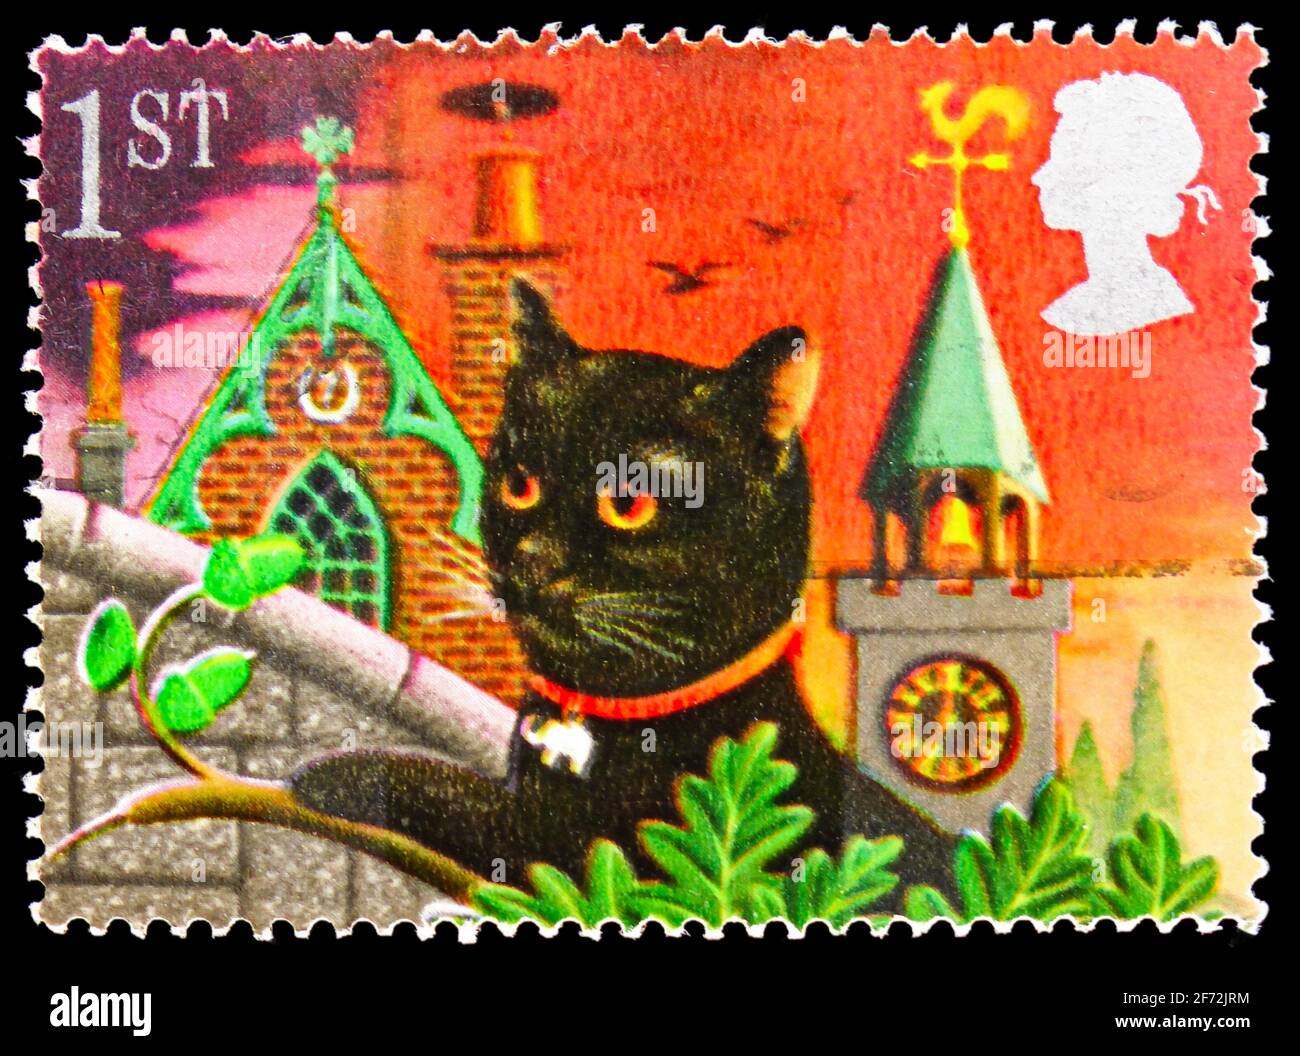 MOSCOU, RUSSIE - 22 DÉCEMBRE 2020: Timbre-poste imprimé au Royaume-Uni montre le chat noir, timbres de voeux 1991 - série symboles de chance, vers 1991 Banque D'Images